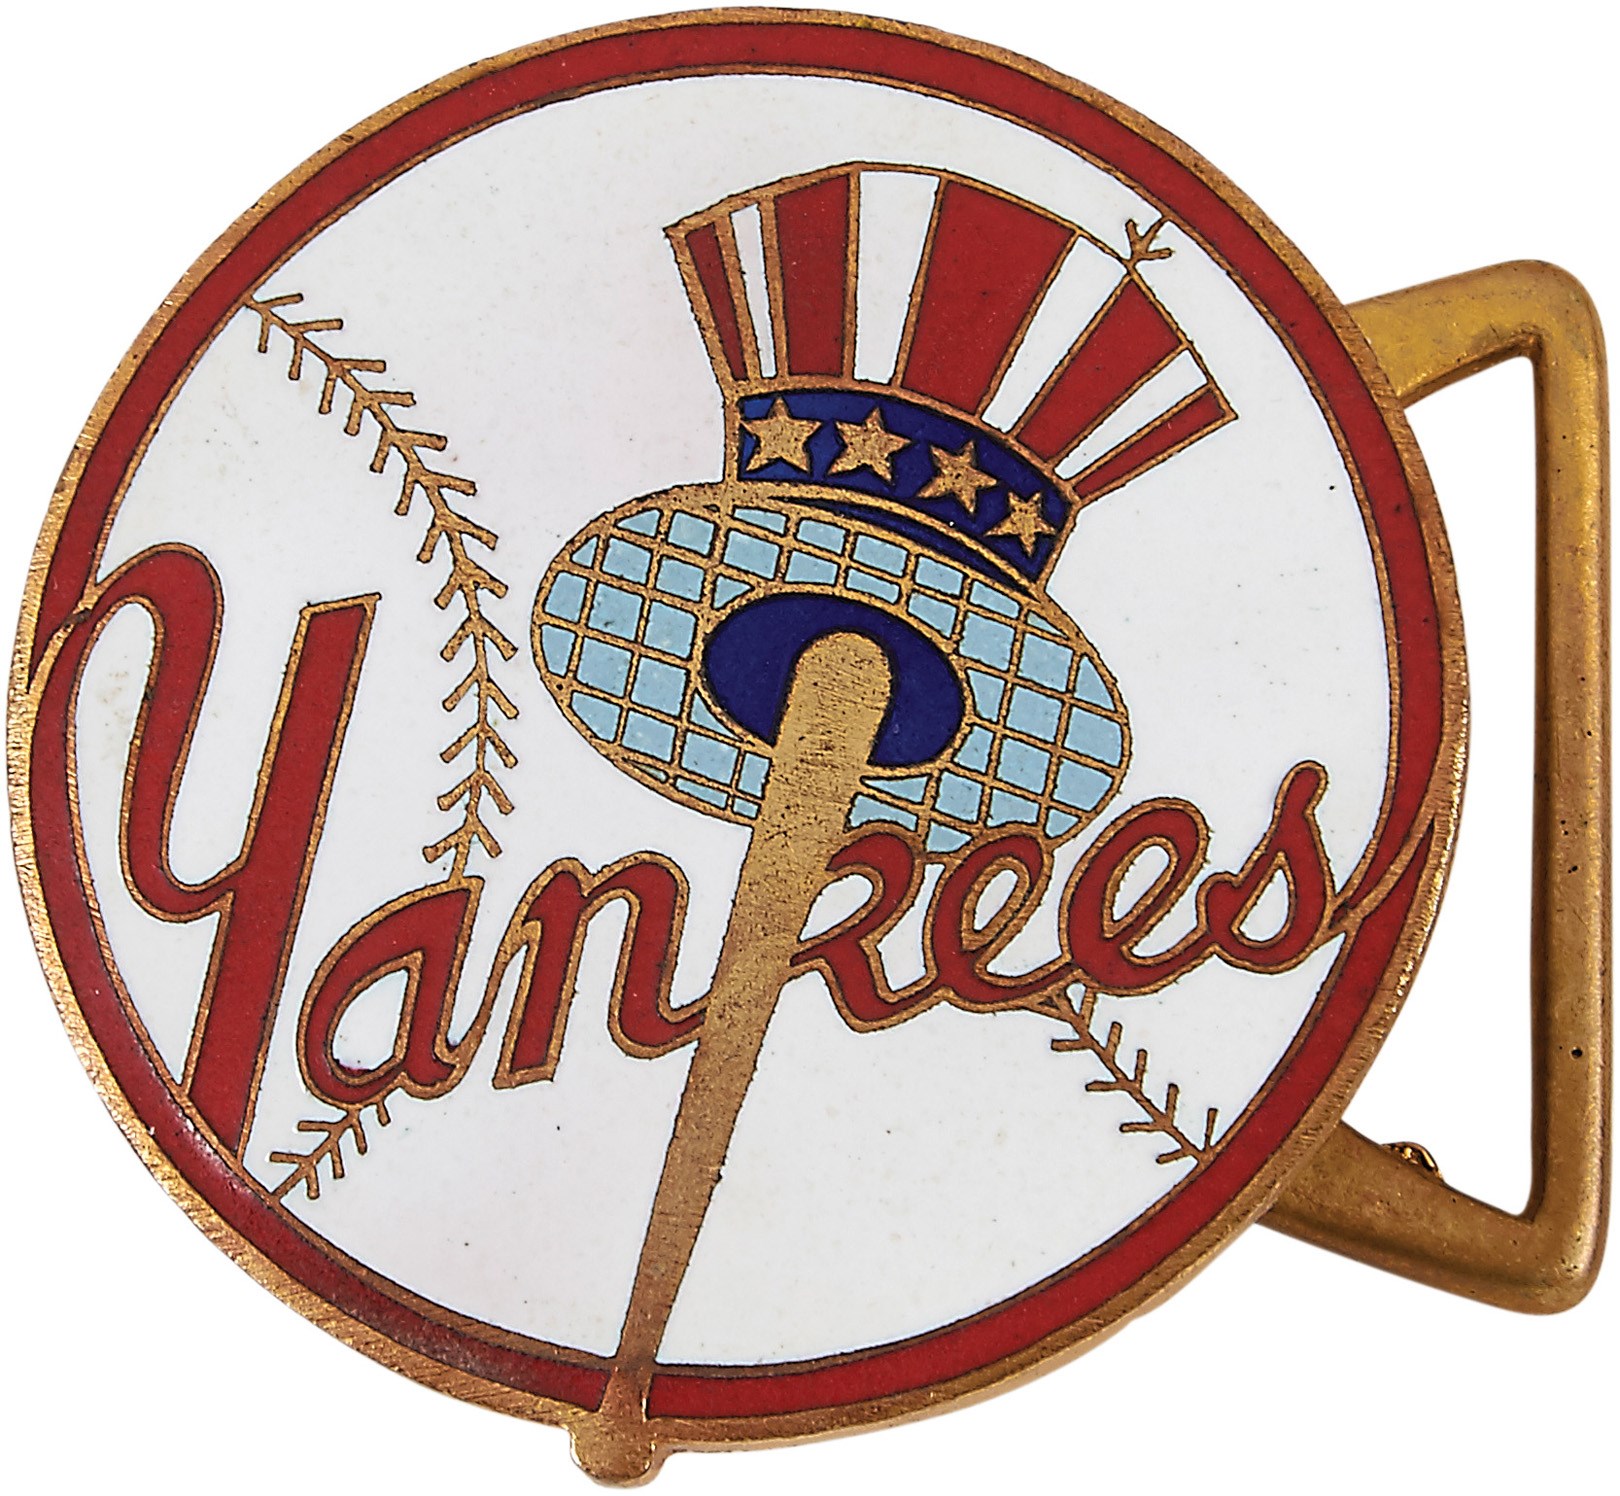 Negro League, Latin, Japanese & International Base - 1955 NY Yankees Tour of Japan Presentation Belt Buckle